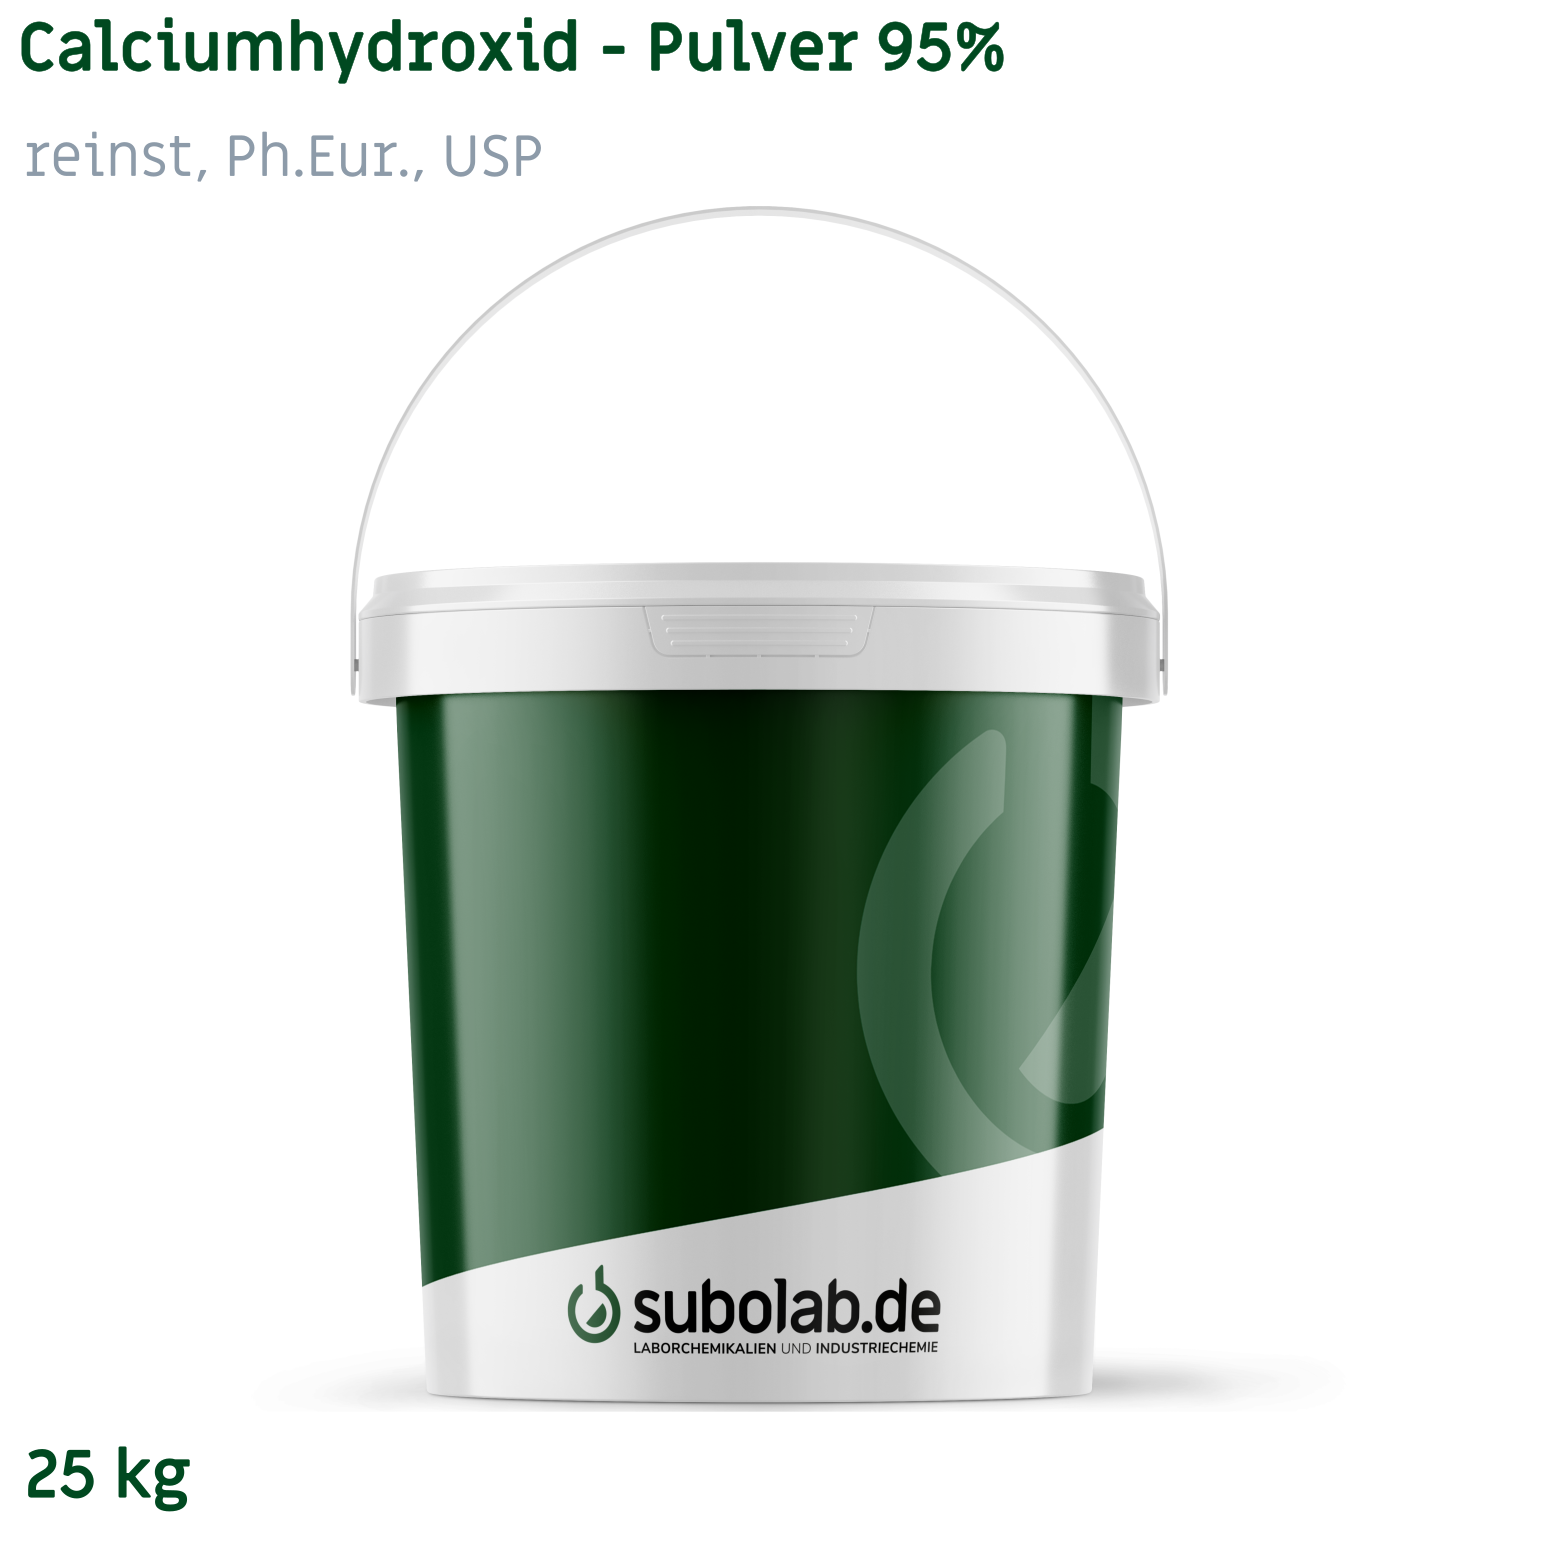 Bild von Calciumhydroxid - Pulver 95% reinst, Ph.Eur., USP (25 kg)